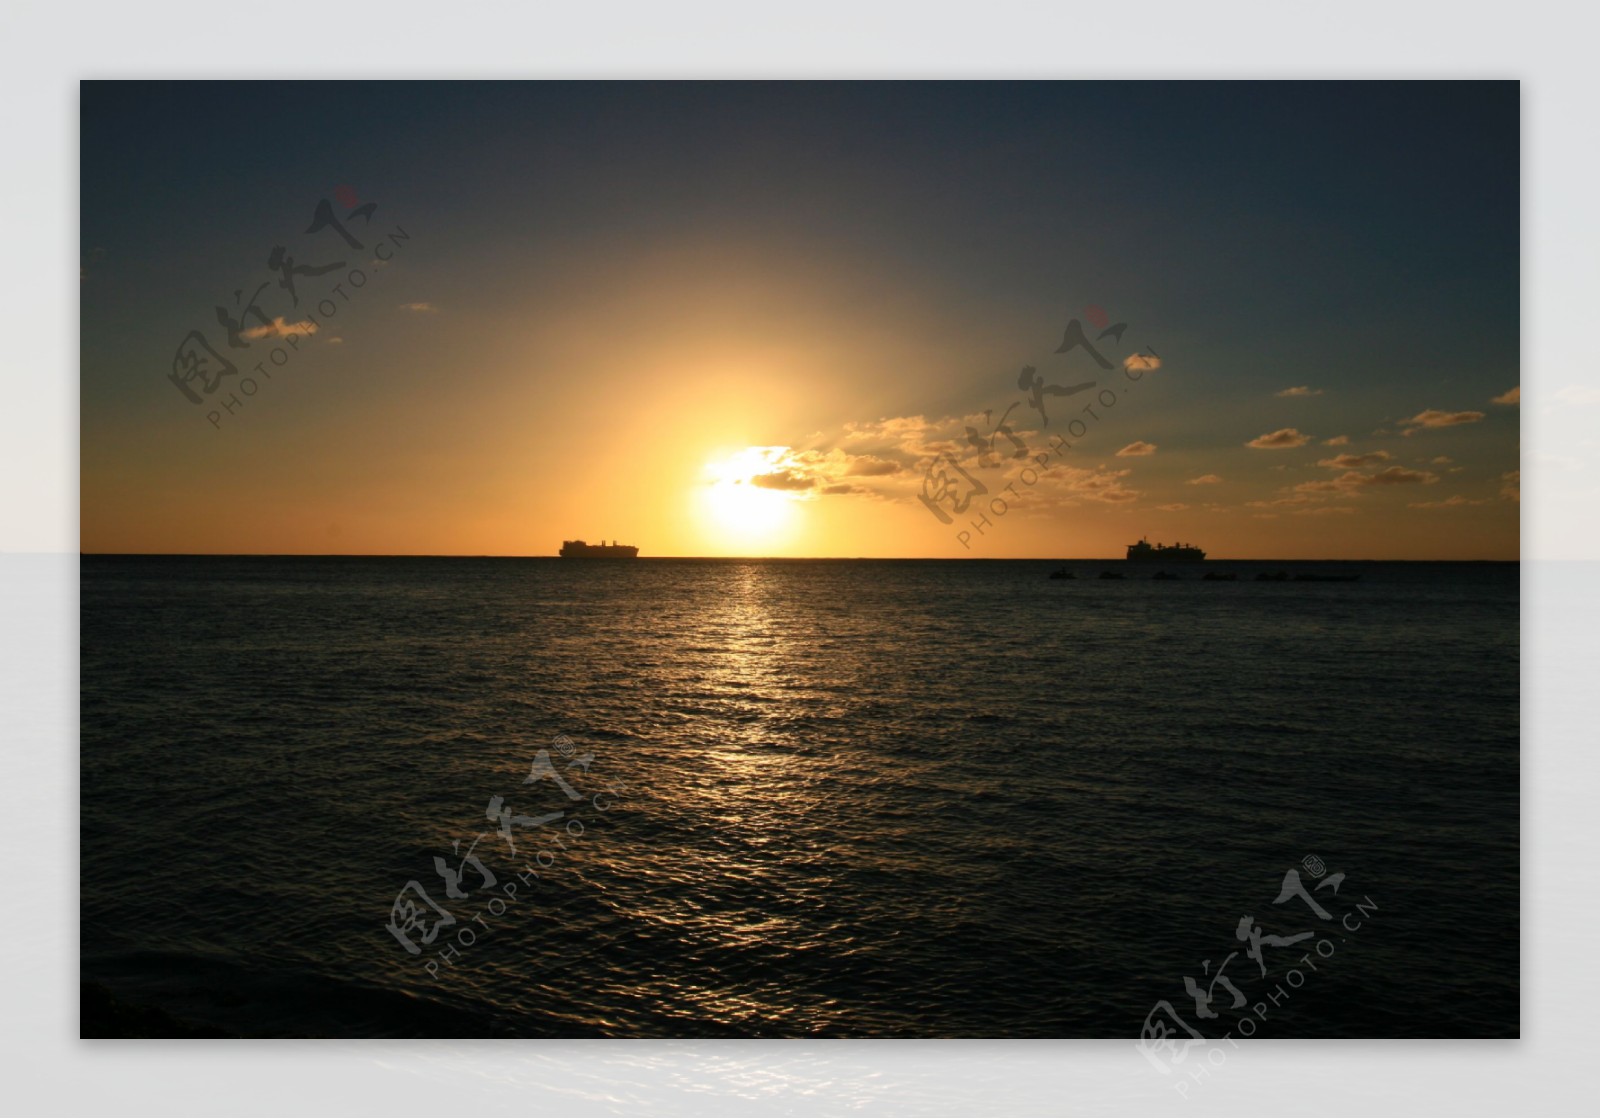 太平洋夕阳美景图片